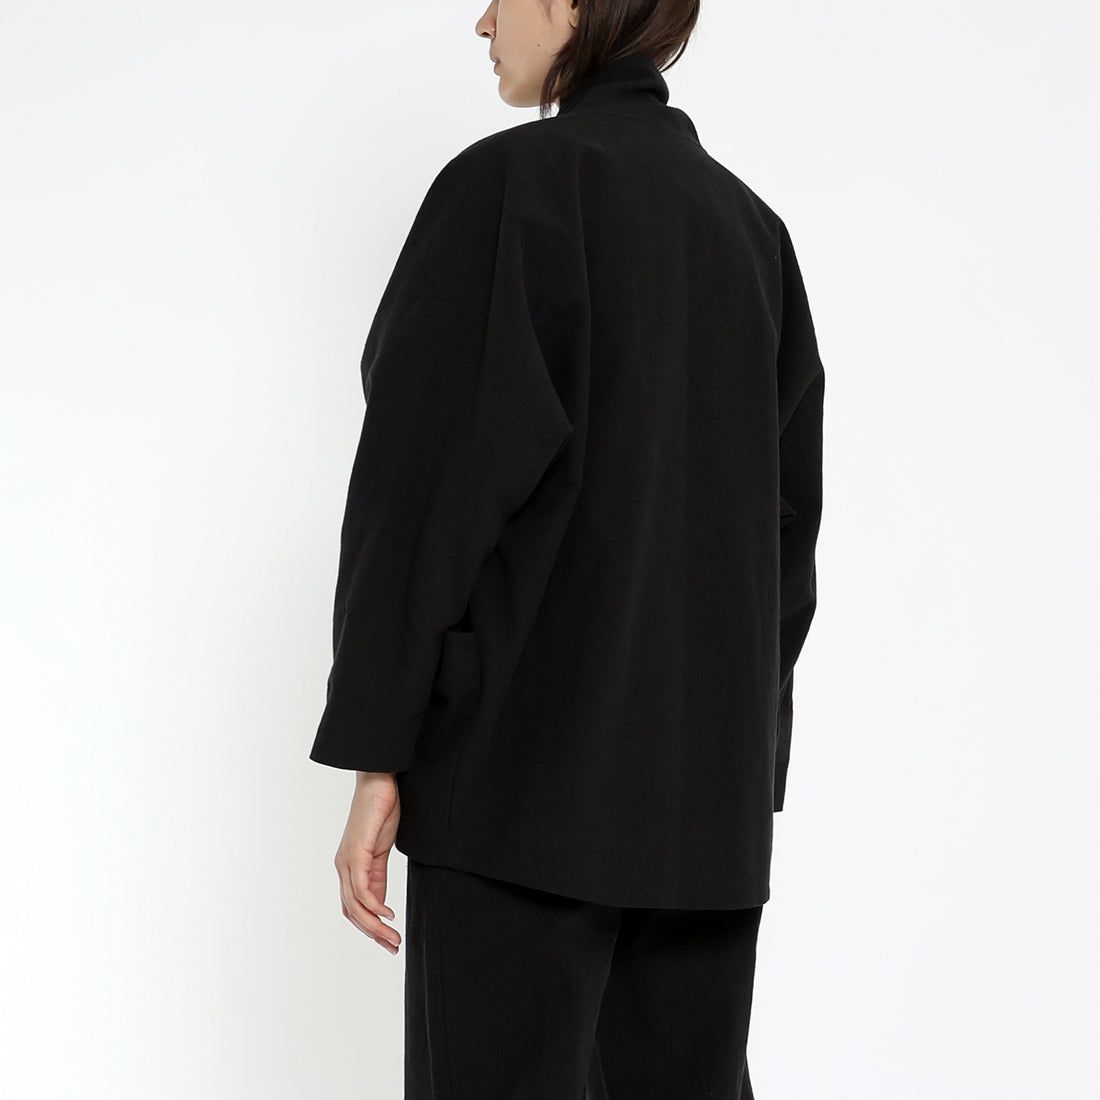 Product Image for Signature Unisex Sumo Jacket, Black